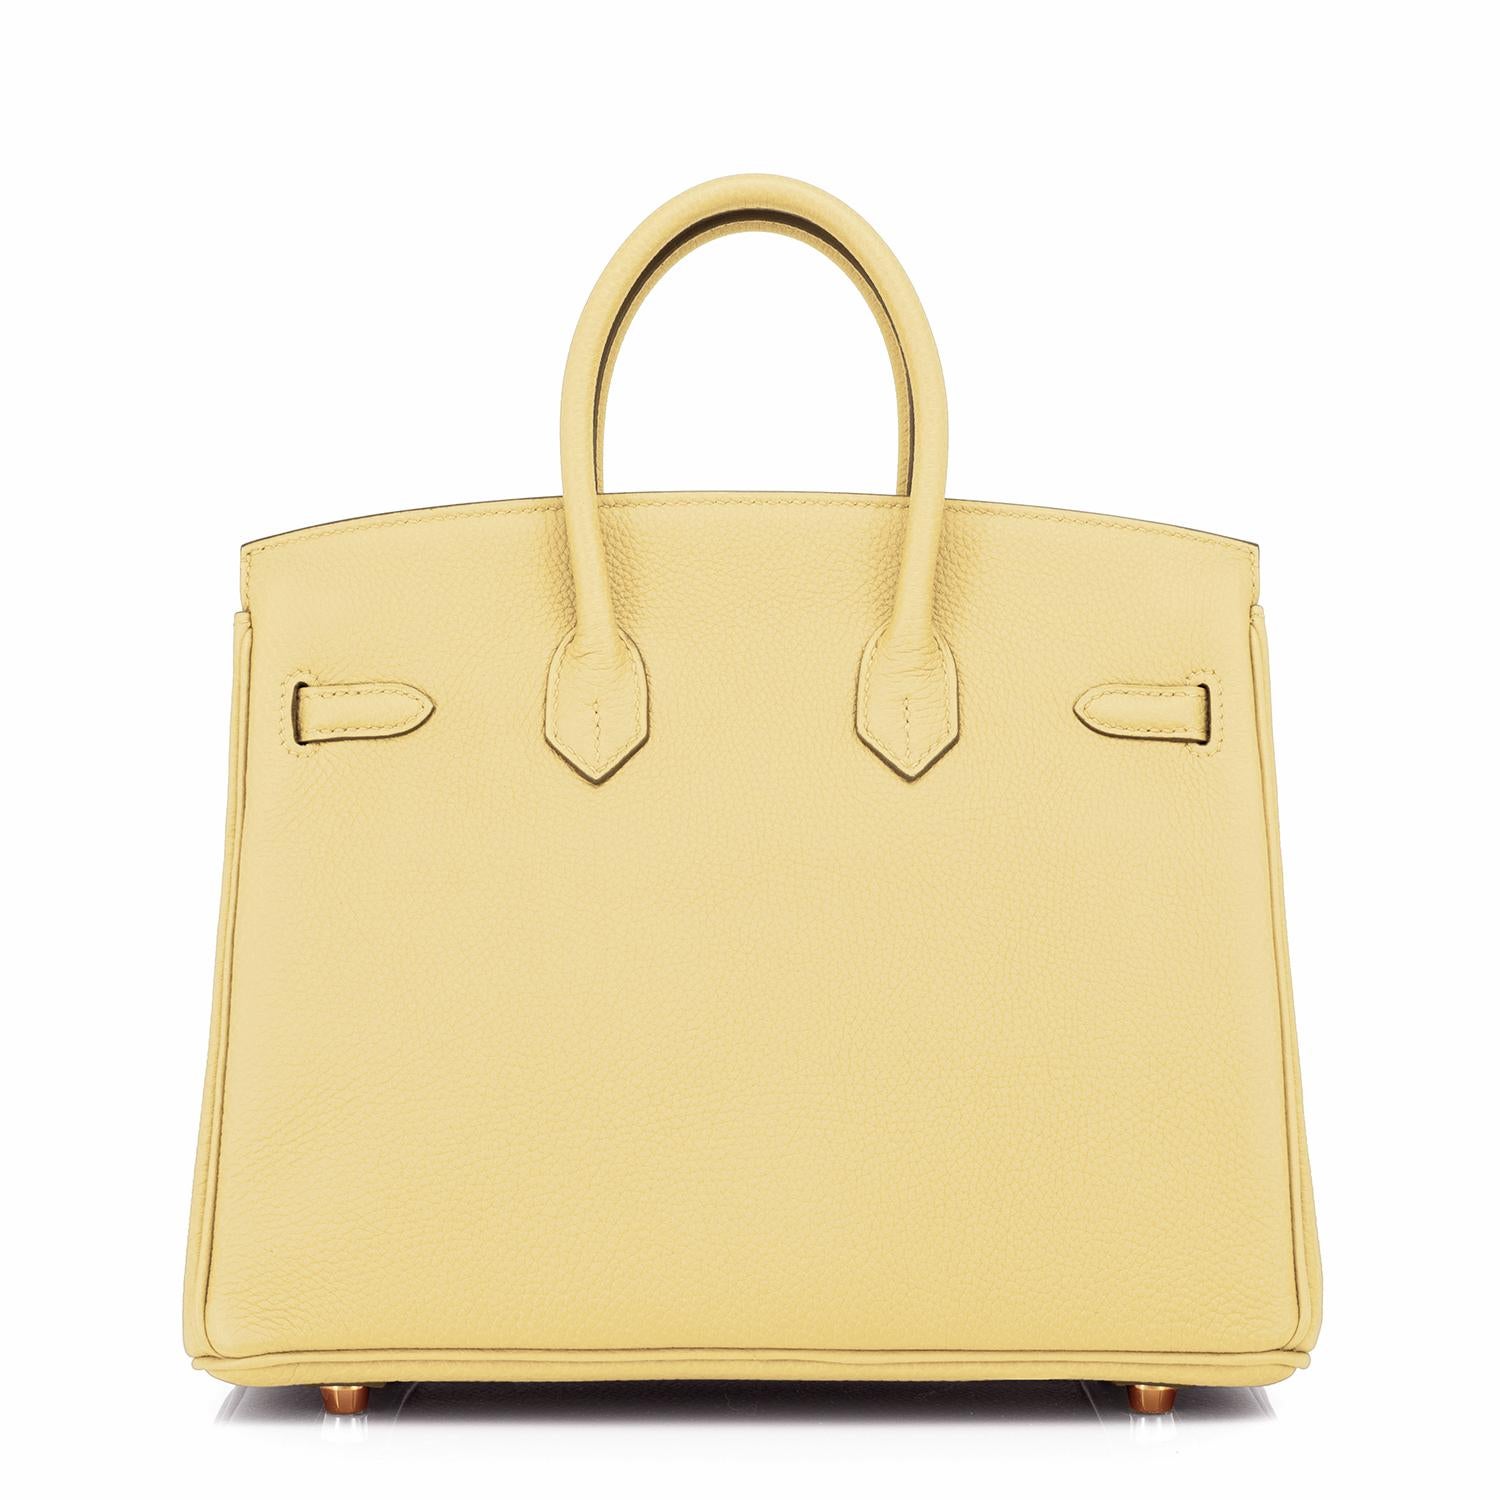 Sac Hermès Birkin 25 jaune Poussin Togo finitions métalliques en or jaune estampillé Z, 2021 1